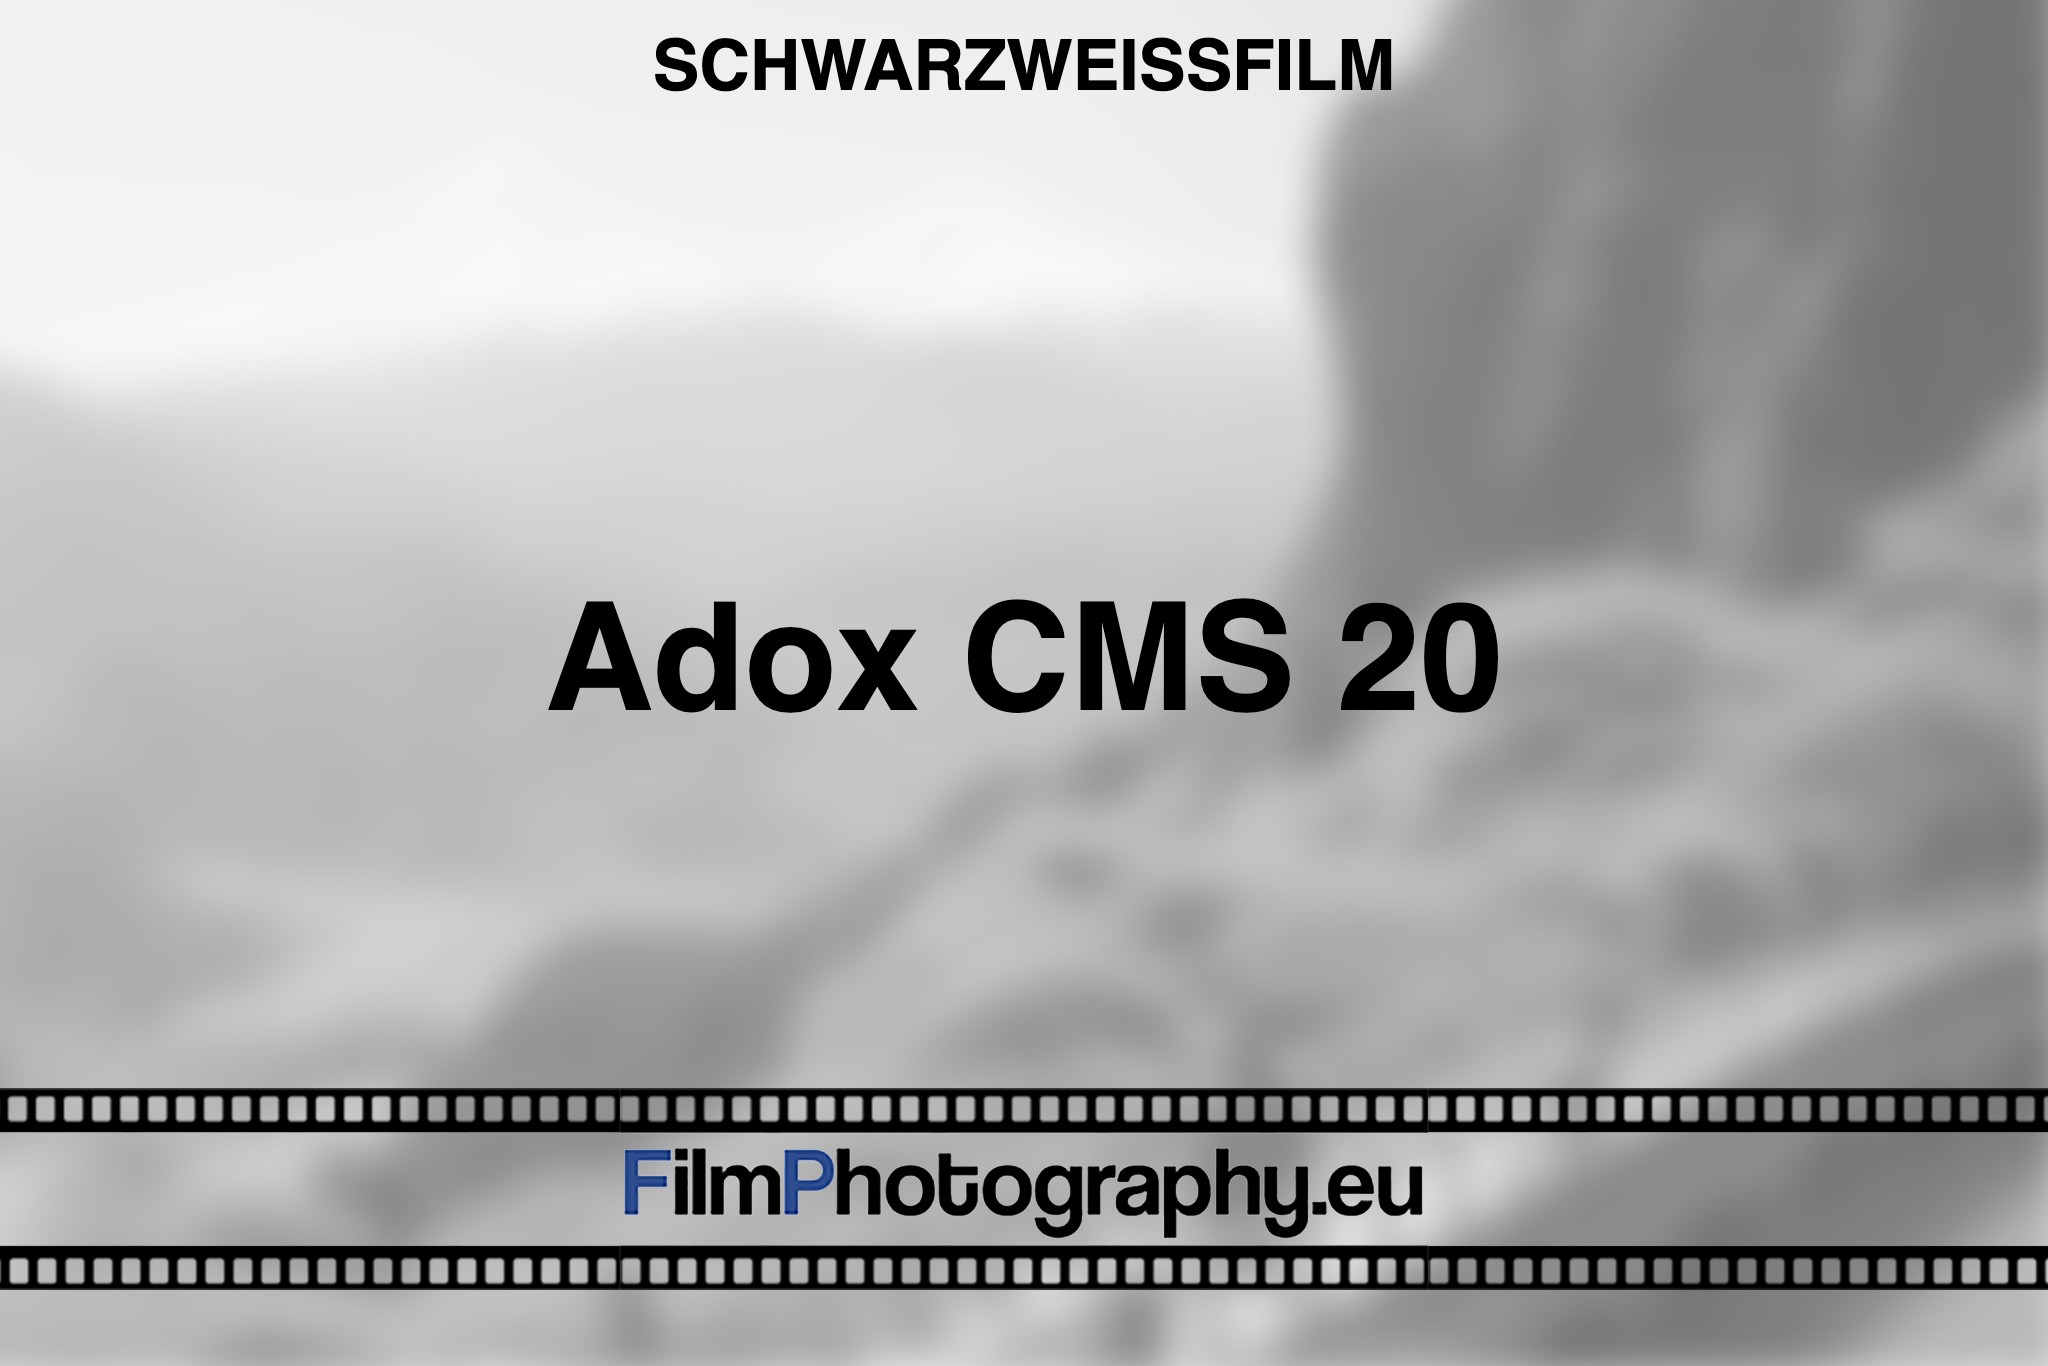 adox-cms-20-schwarzweißfilm-bnv